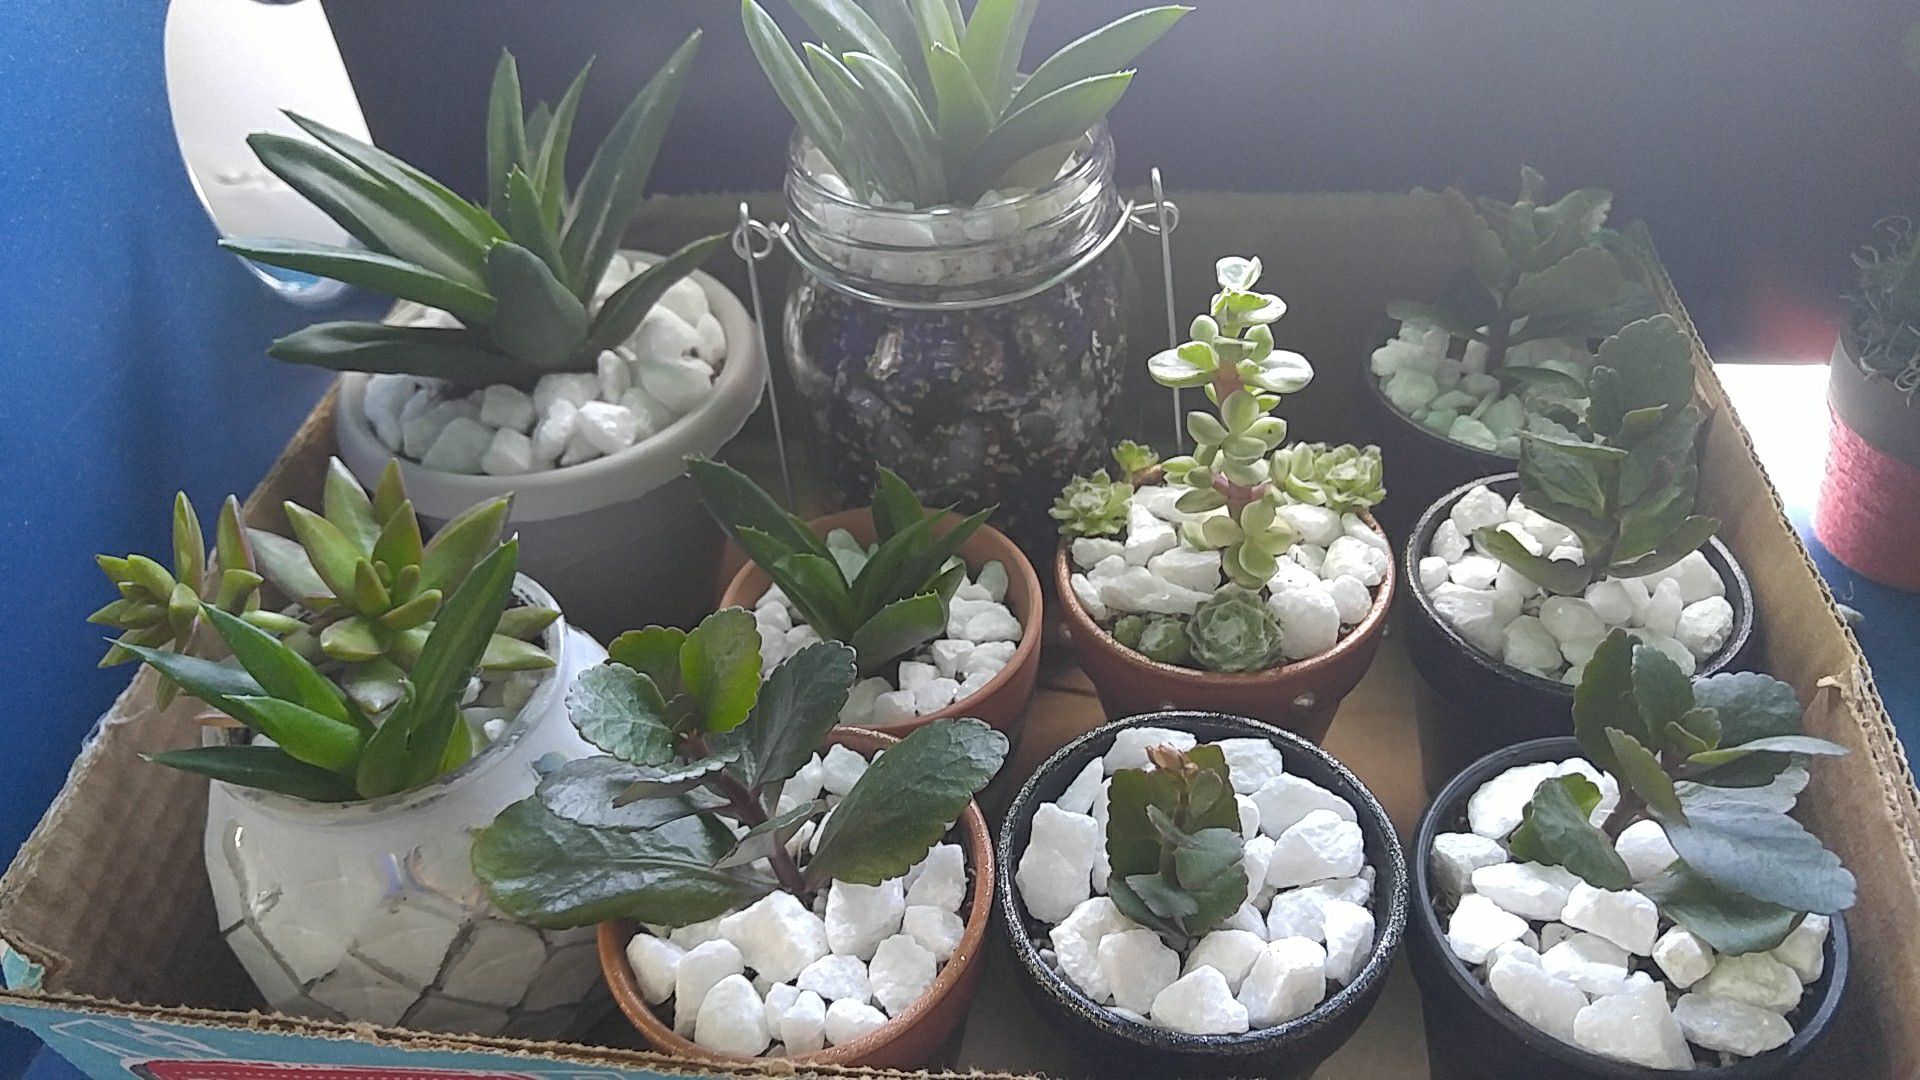 Various succulents